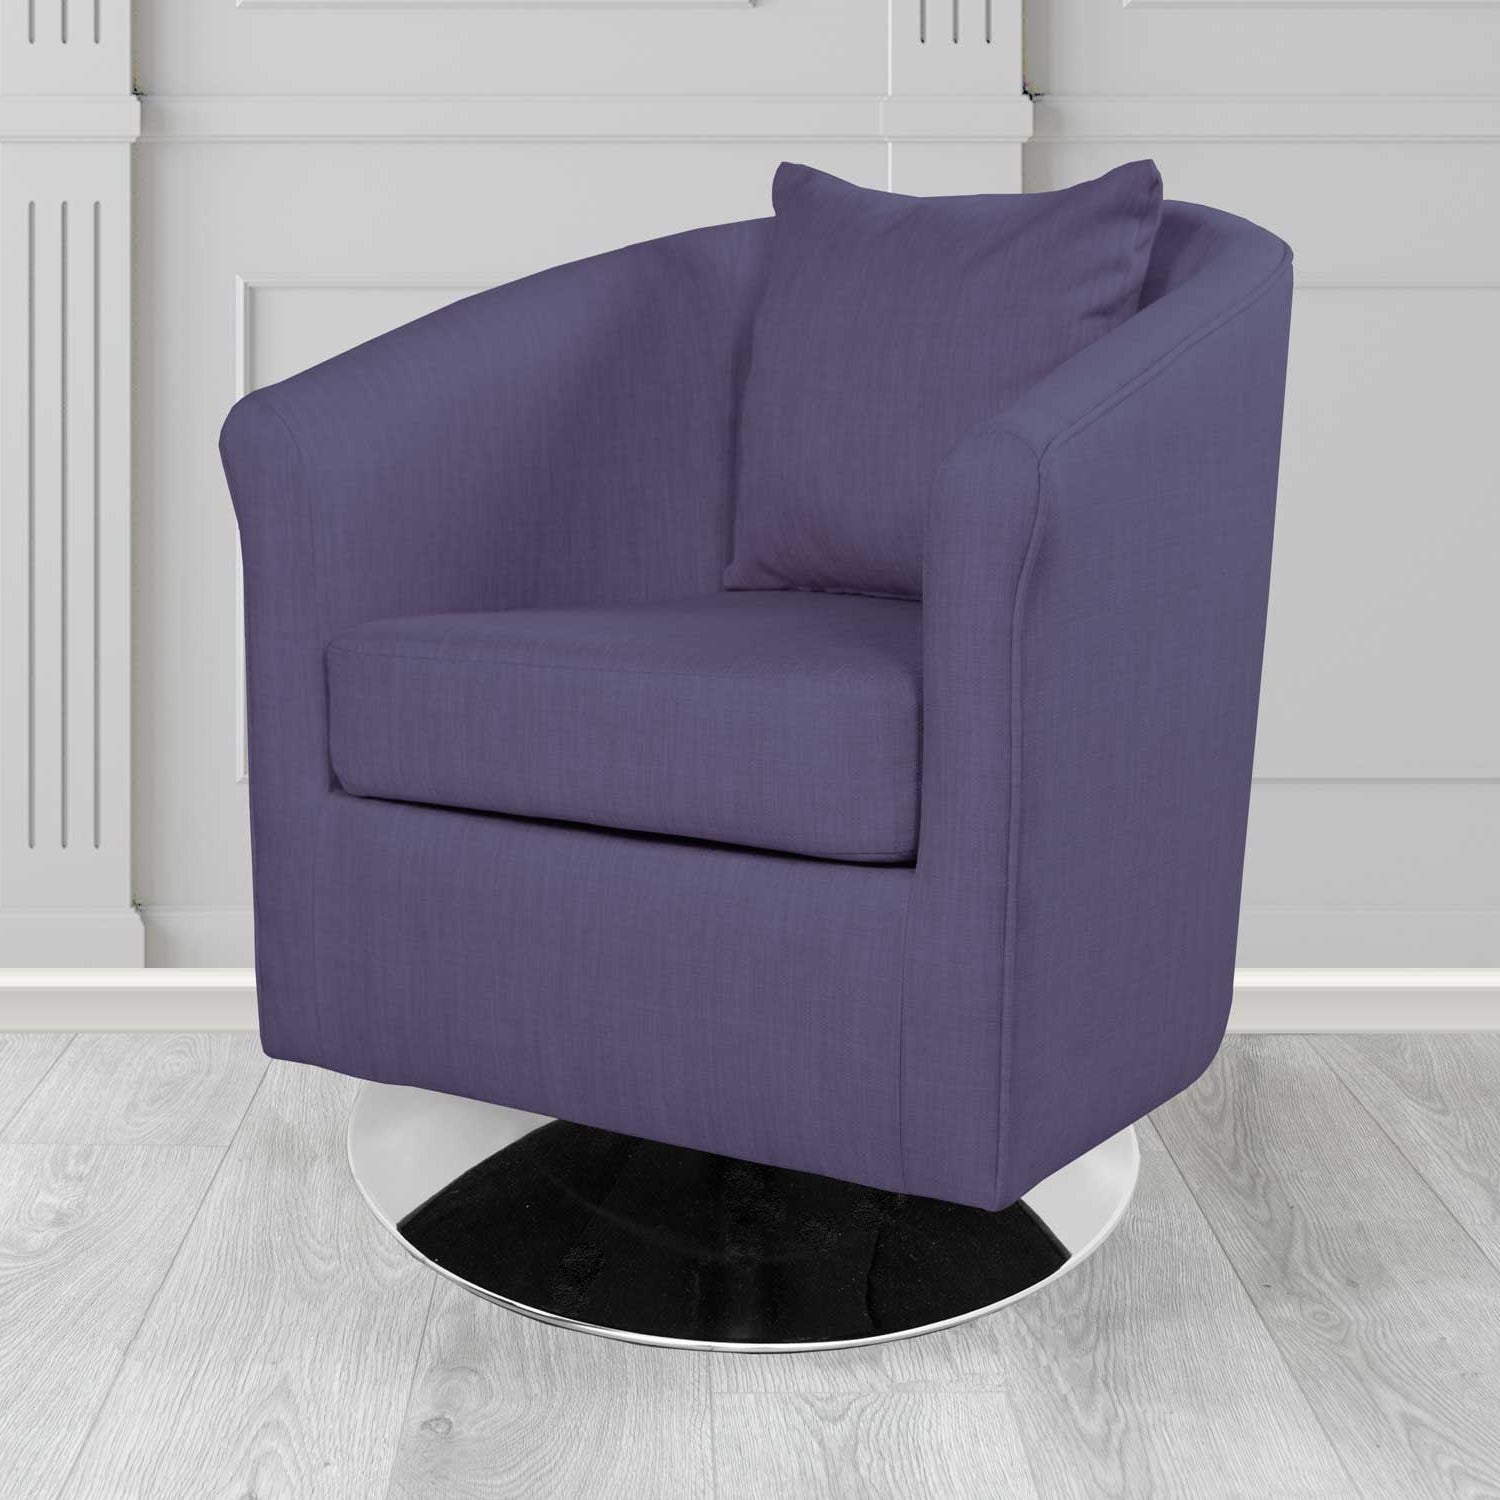 St Tropez Charles Purple Plain Linen Fabric Swivel Tub Chair - The Tub Chair Shop